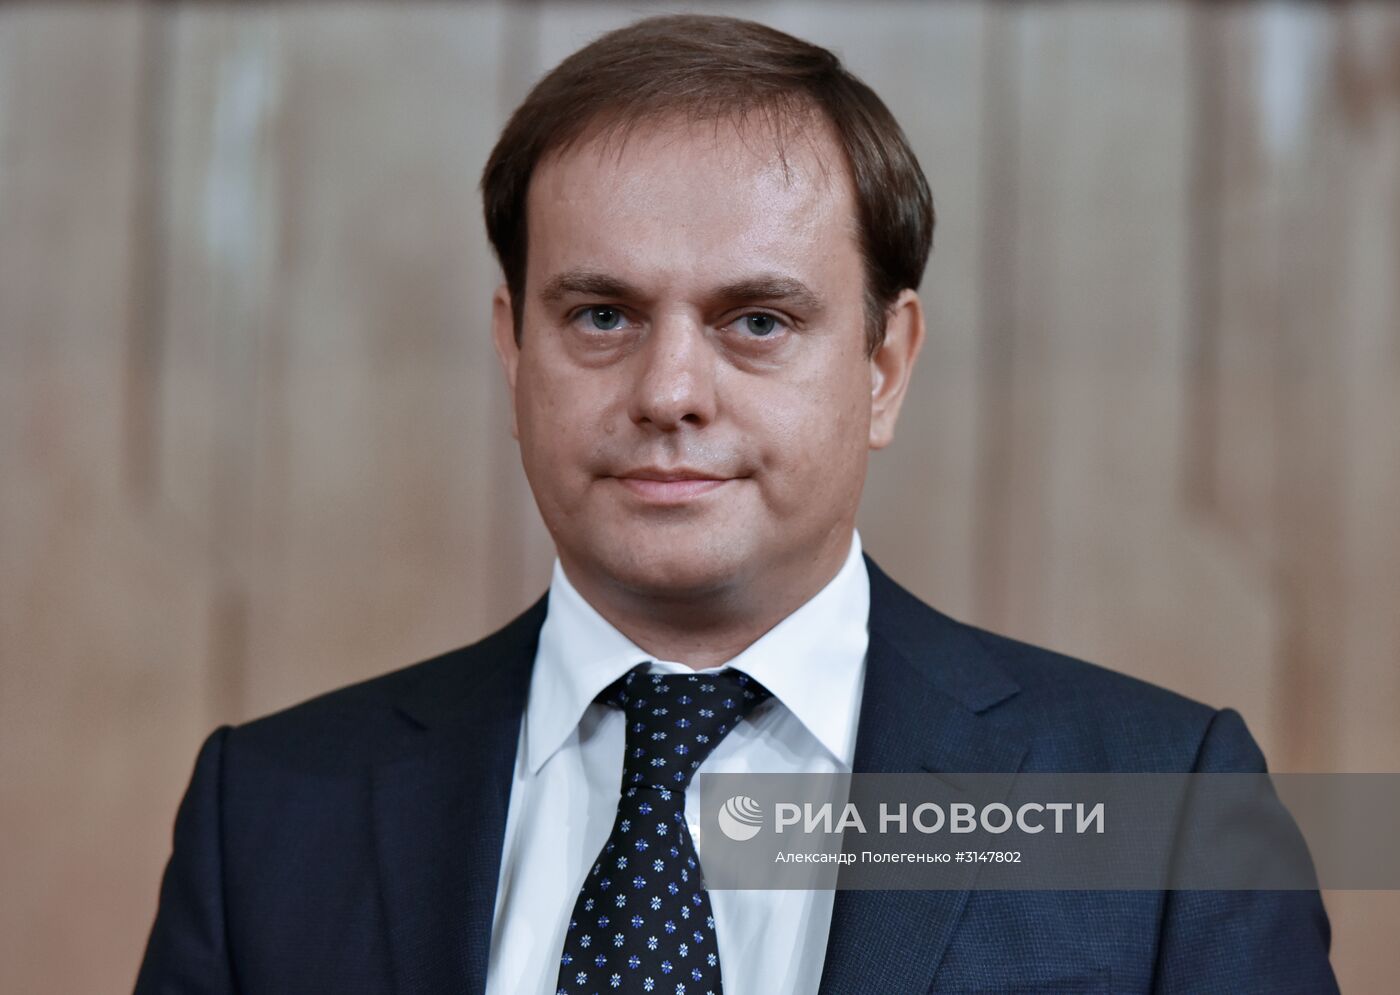 На внеочередной сессии Госсовета Крыма назначены новые министры